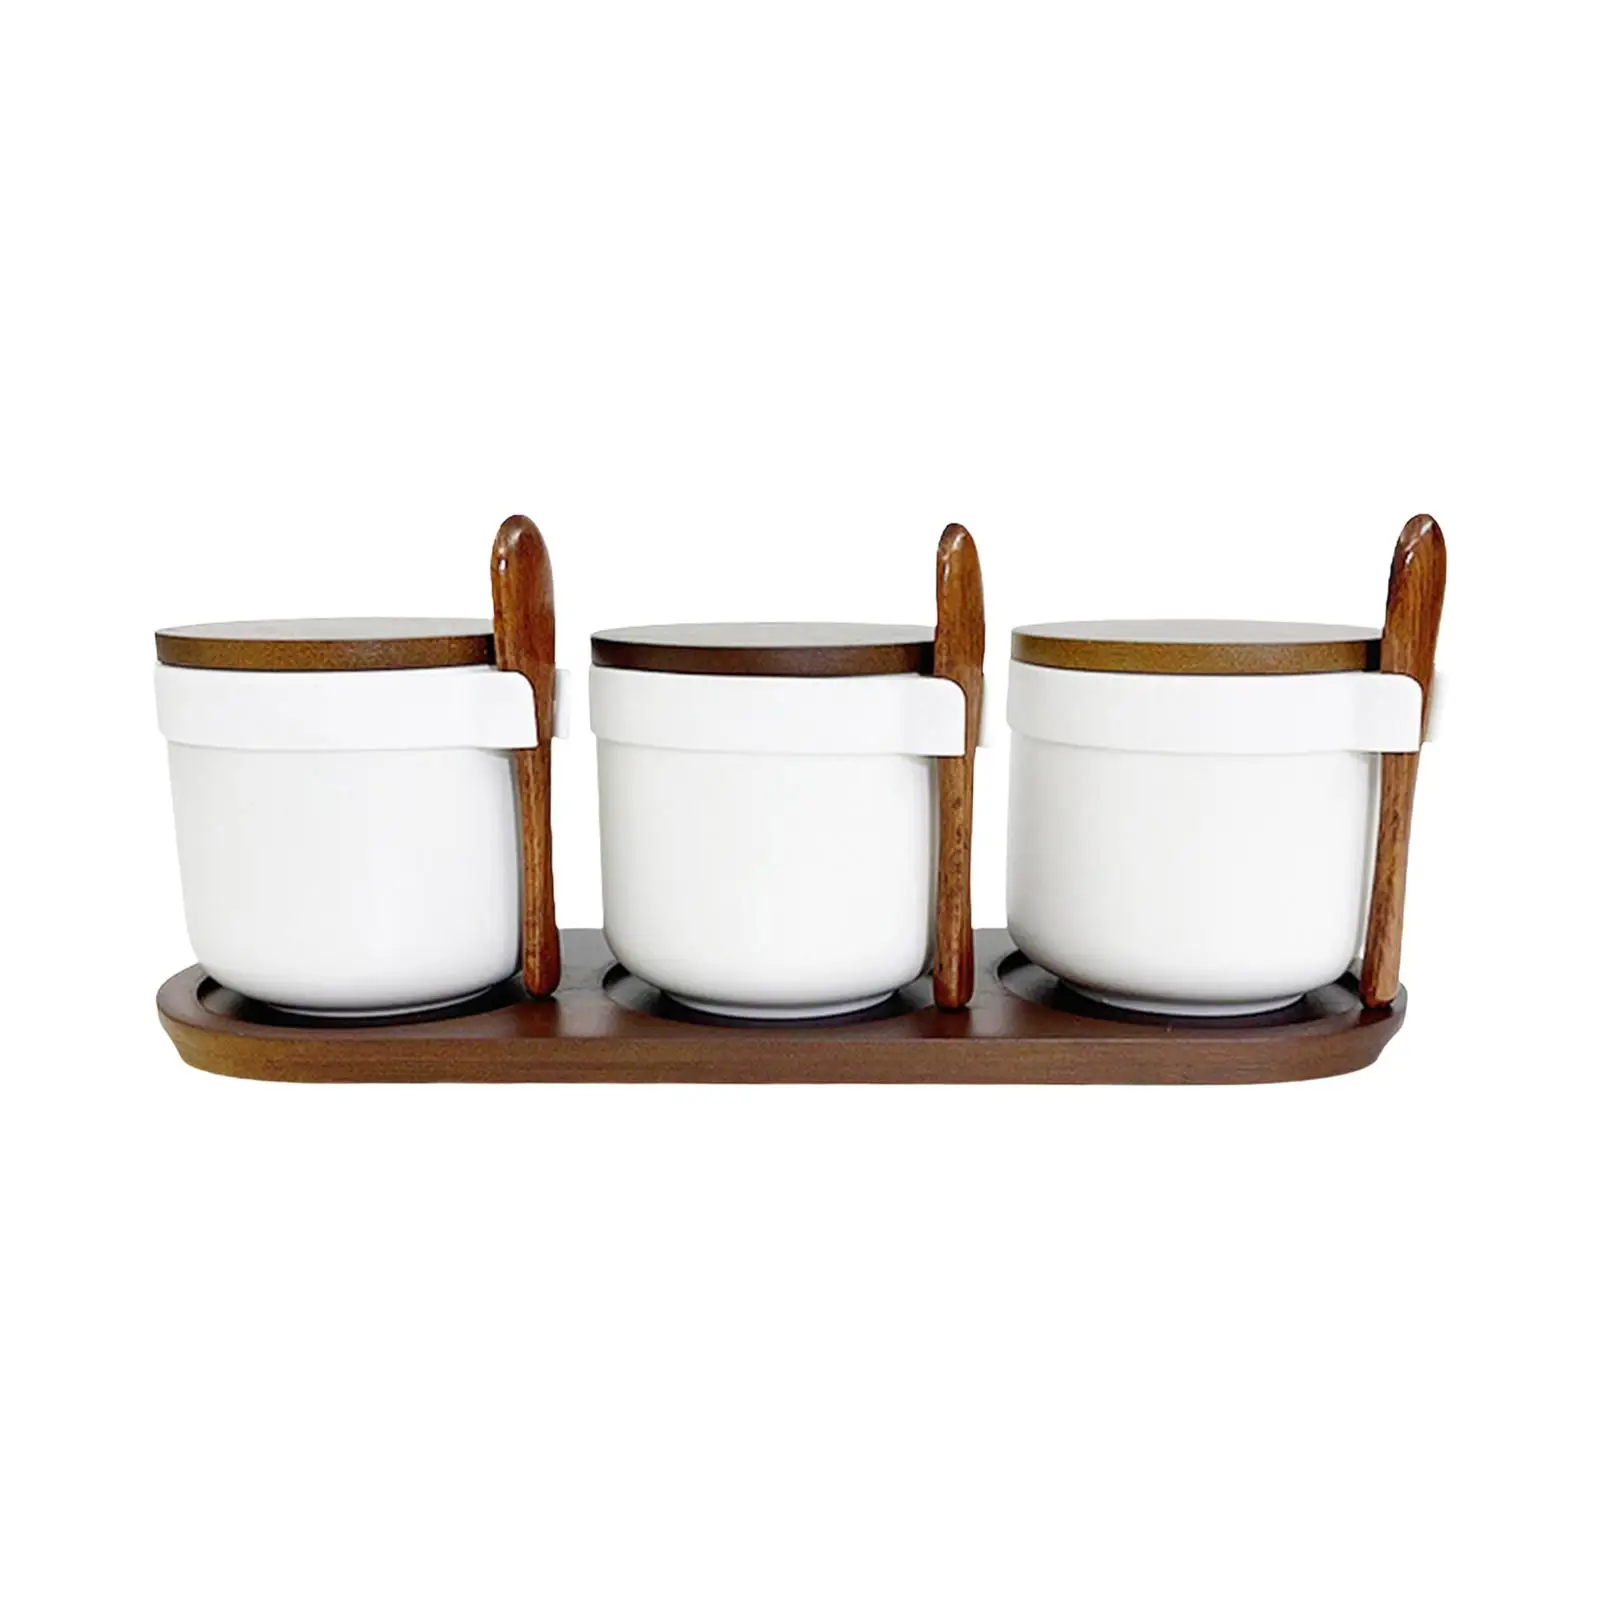 3x Ceramic Spice Jars Spice Bowls Food Storage Canister Dustproof Porcelain Condiment Jars Set for Kitchen Storage Home Sugar